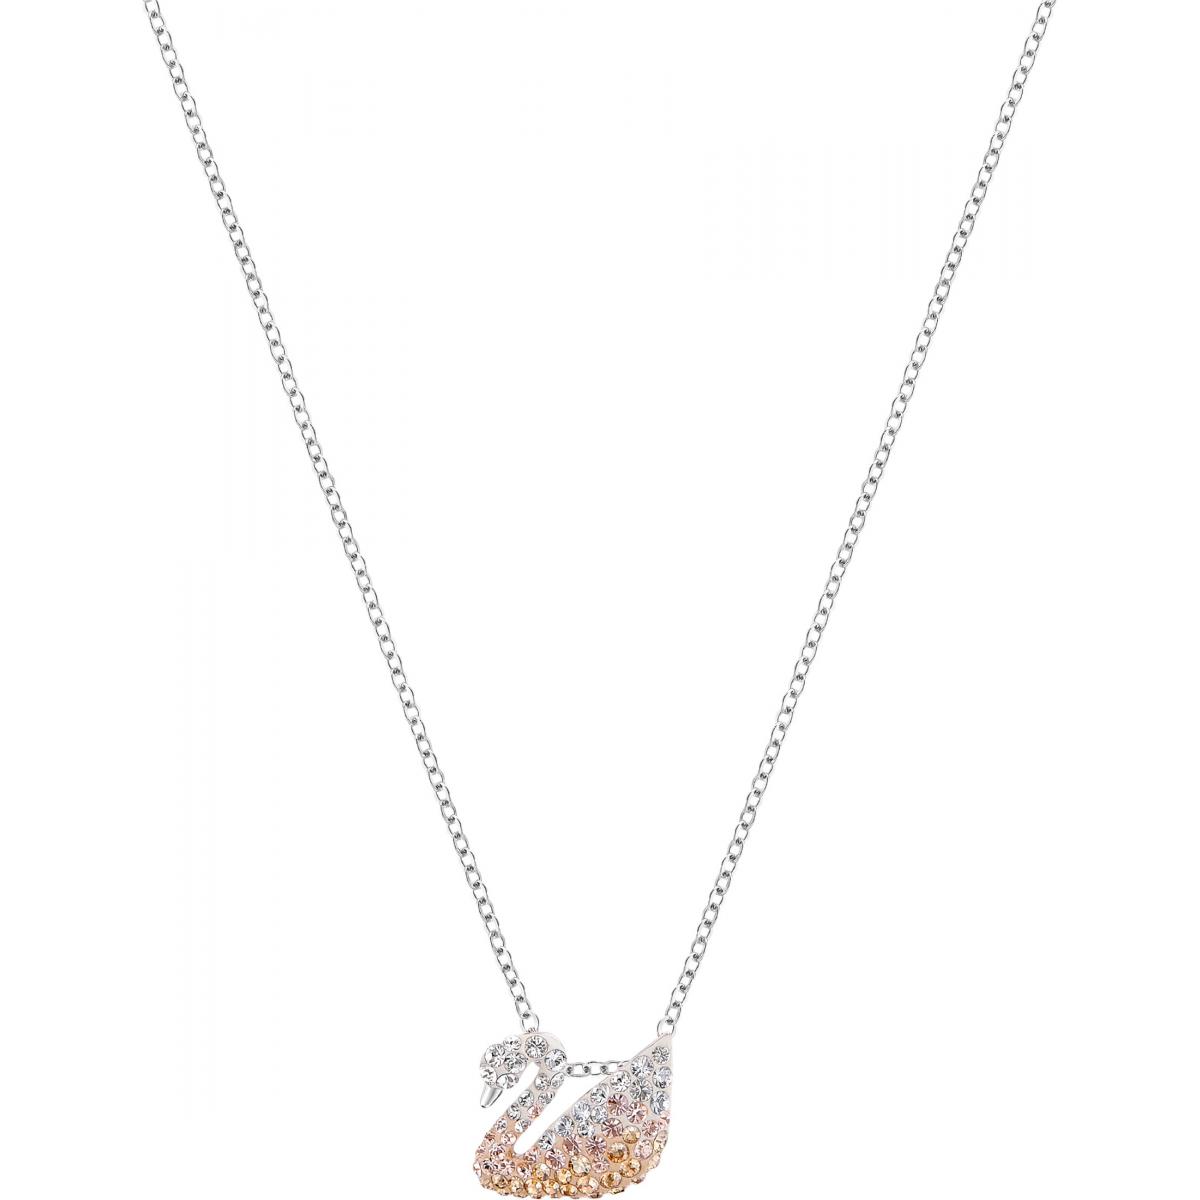 Collier Swarovski Classic Jewelry 5215038 - Collier Pendant Cygne Femme